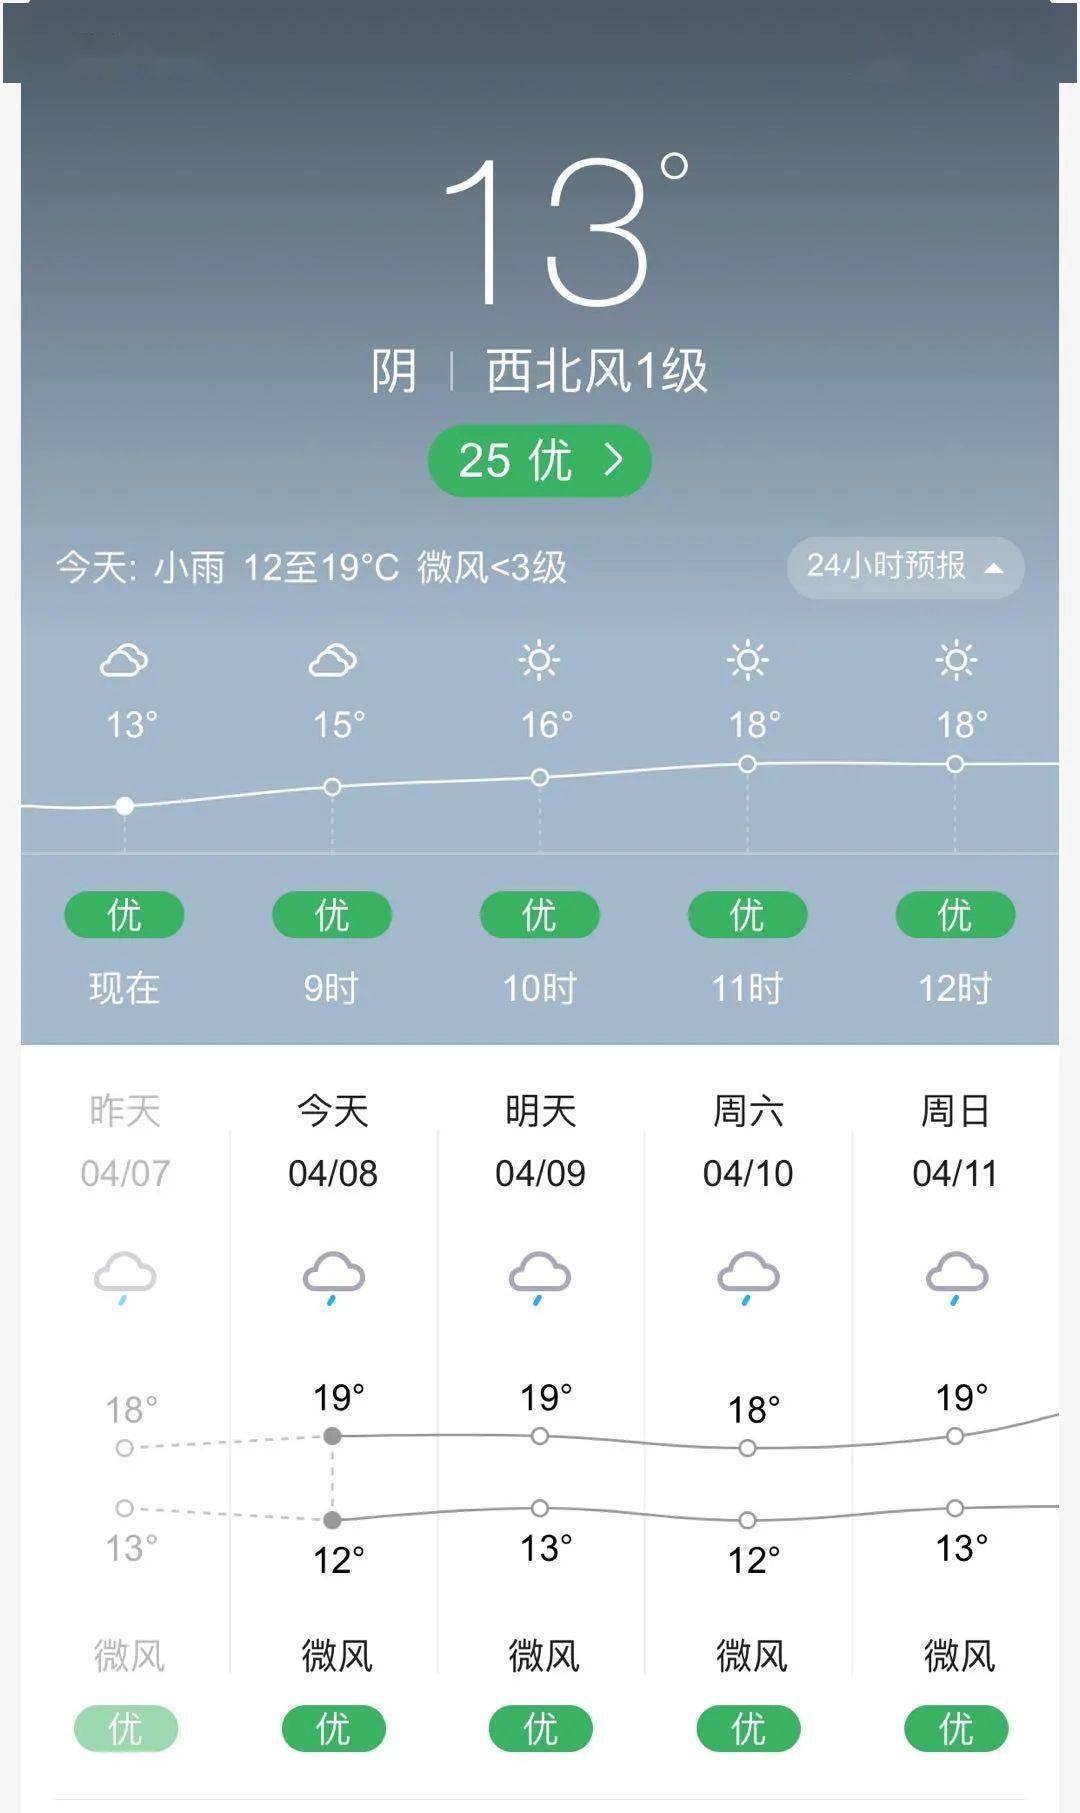 昨天到今天汉源的天气预报都是显示雨,雨雨雨